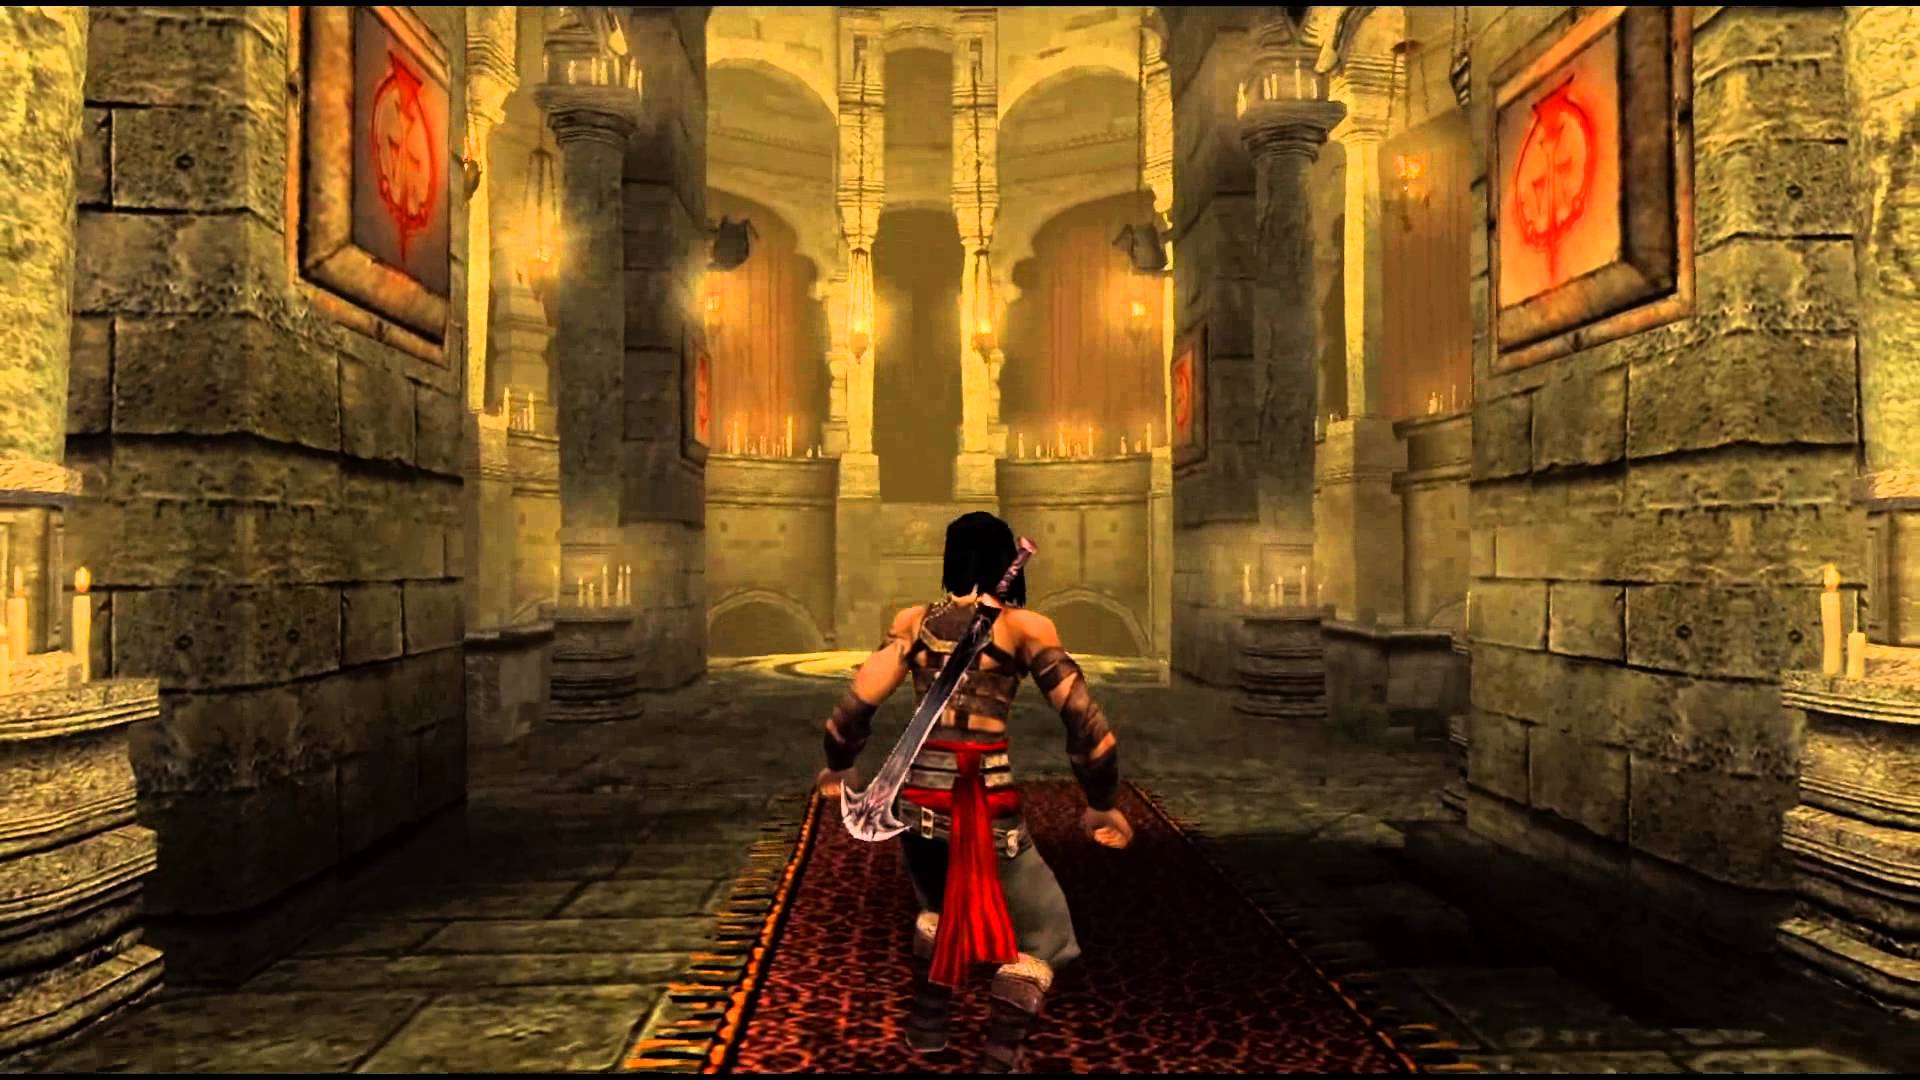 Résultat de recherche d'images pour "Prince Of Persia Warrior Within pc"